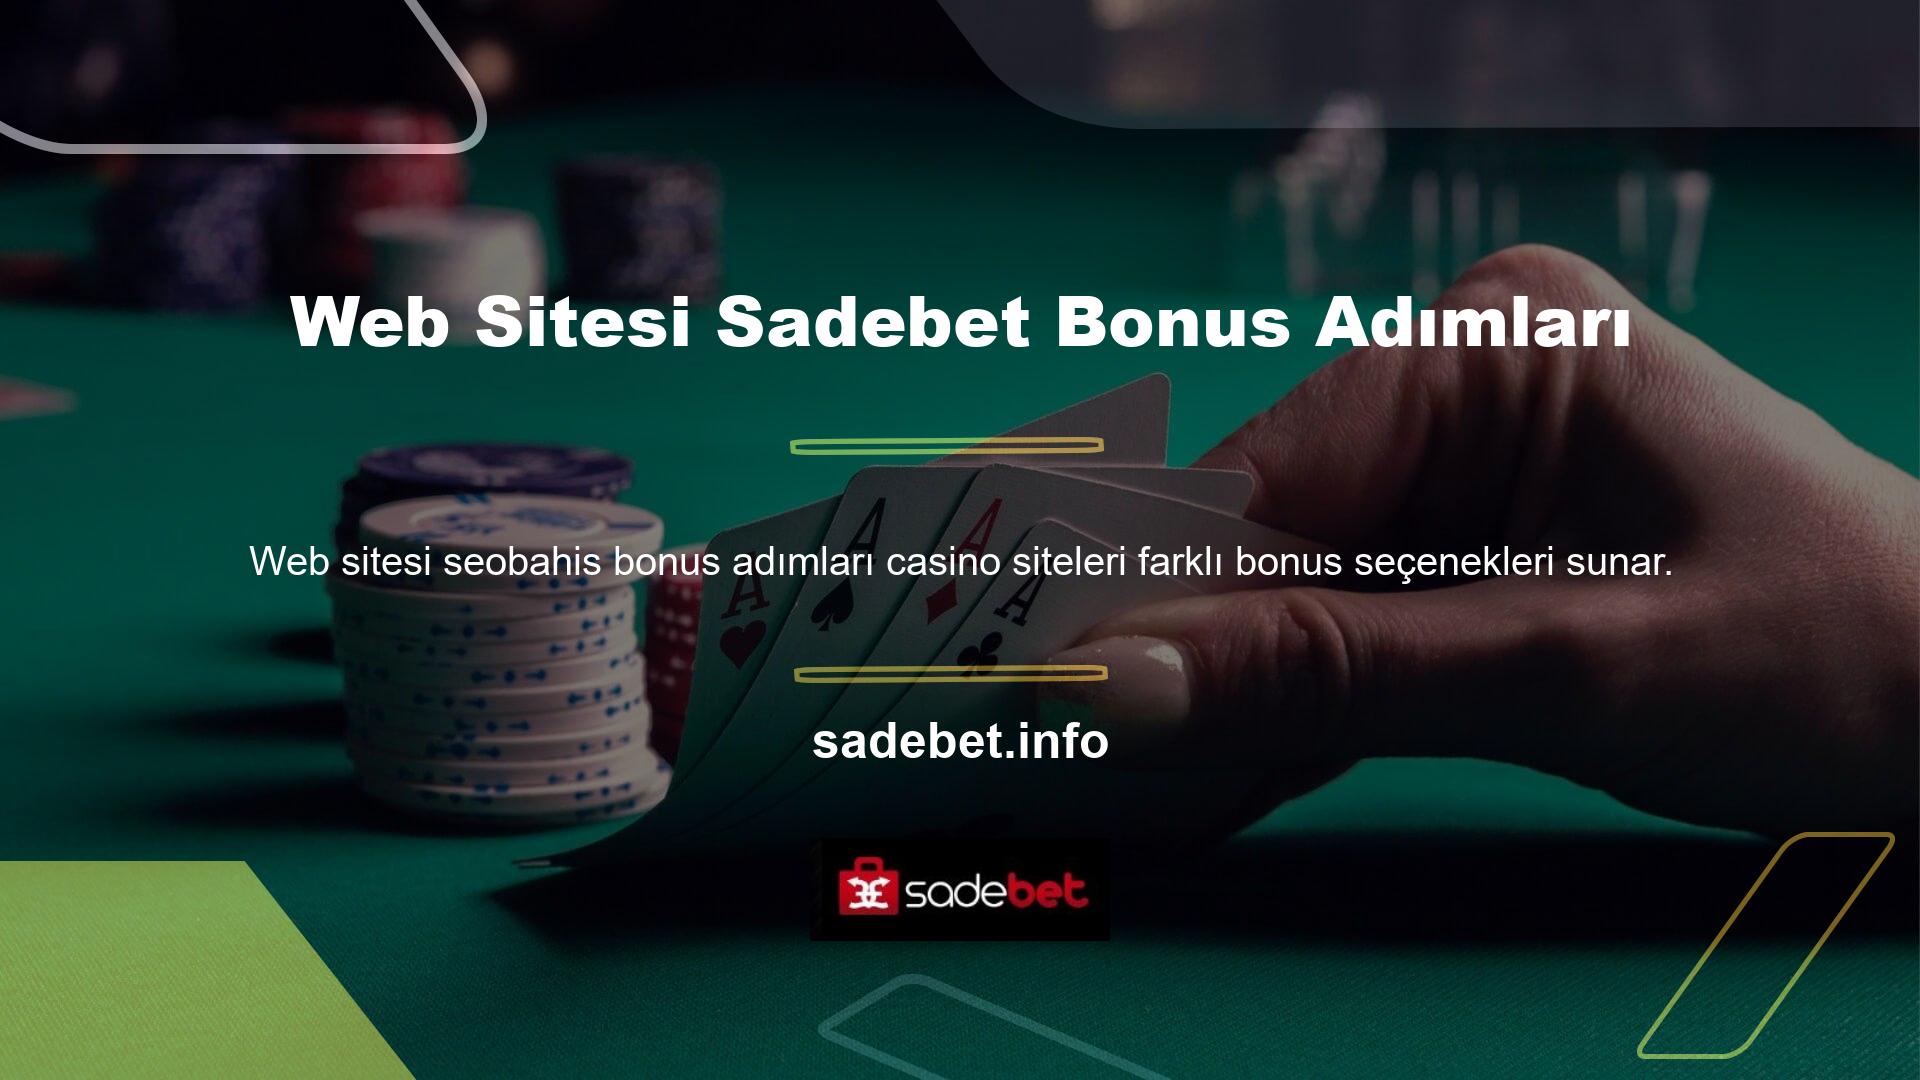 Casino sitelerindeki bonus seçeneklerini kullanmak için siteye üye olmanız gerekmektedir